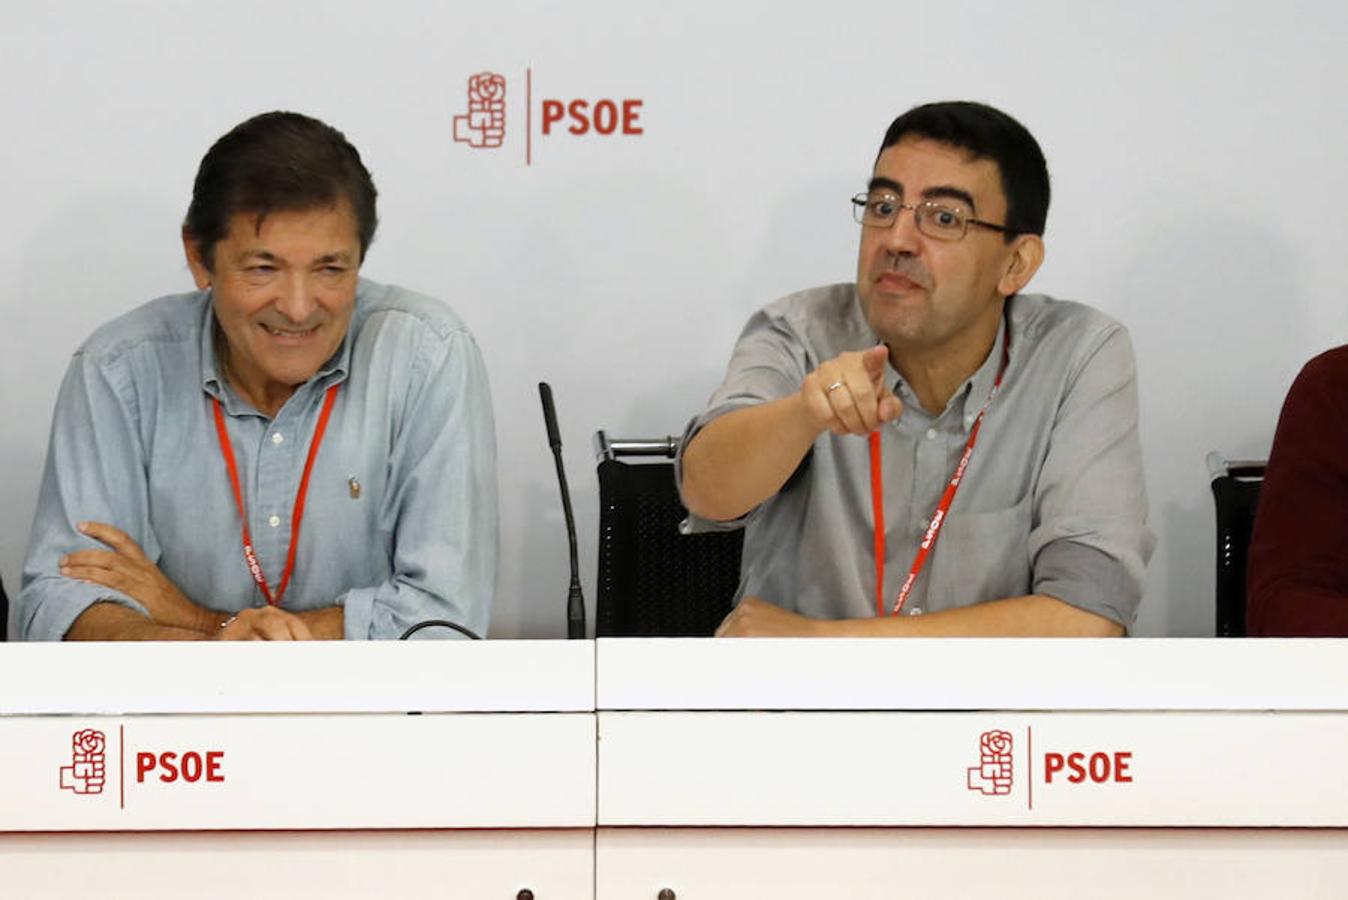 El presidente de la gestora del PSOE, Javier Fernández, y el vocal Mario Jiménez Díaz, poco antes de que comenzase la reunión del Comité Federal del partido.